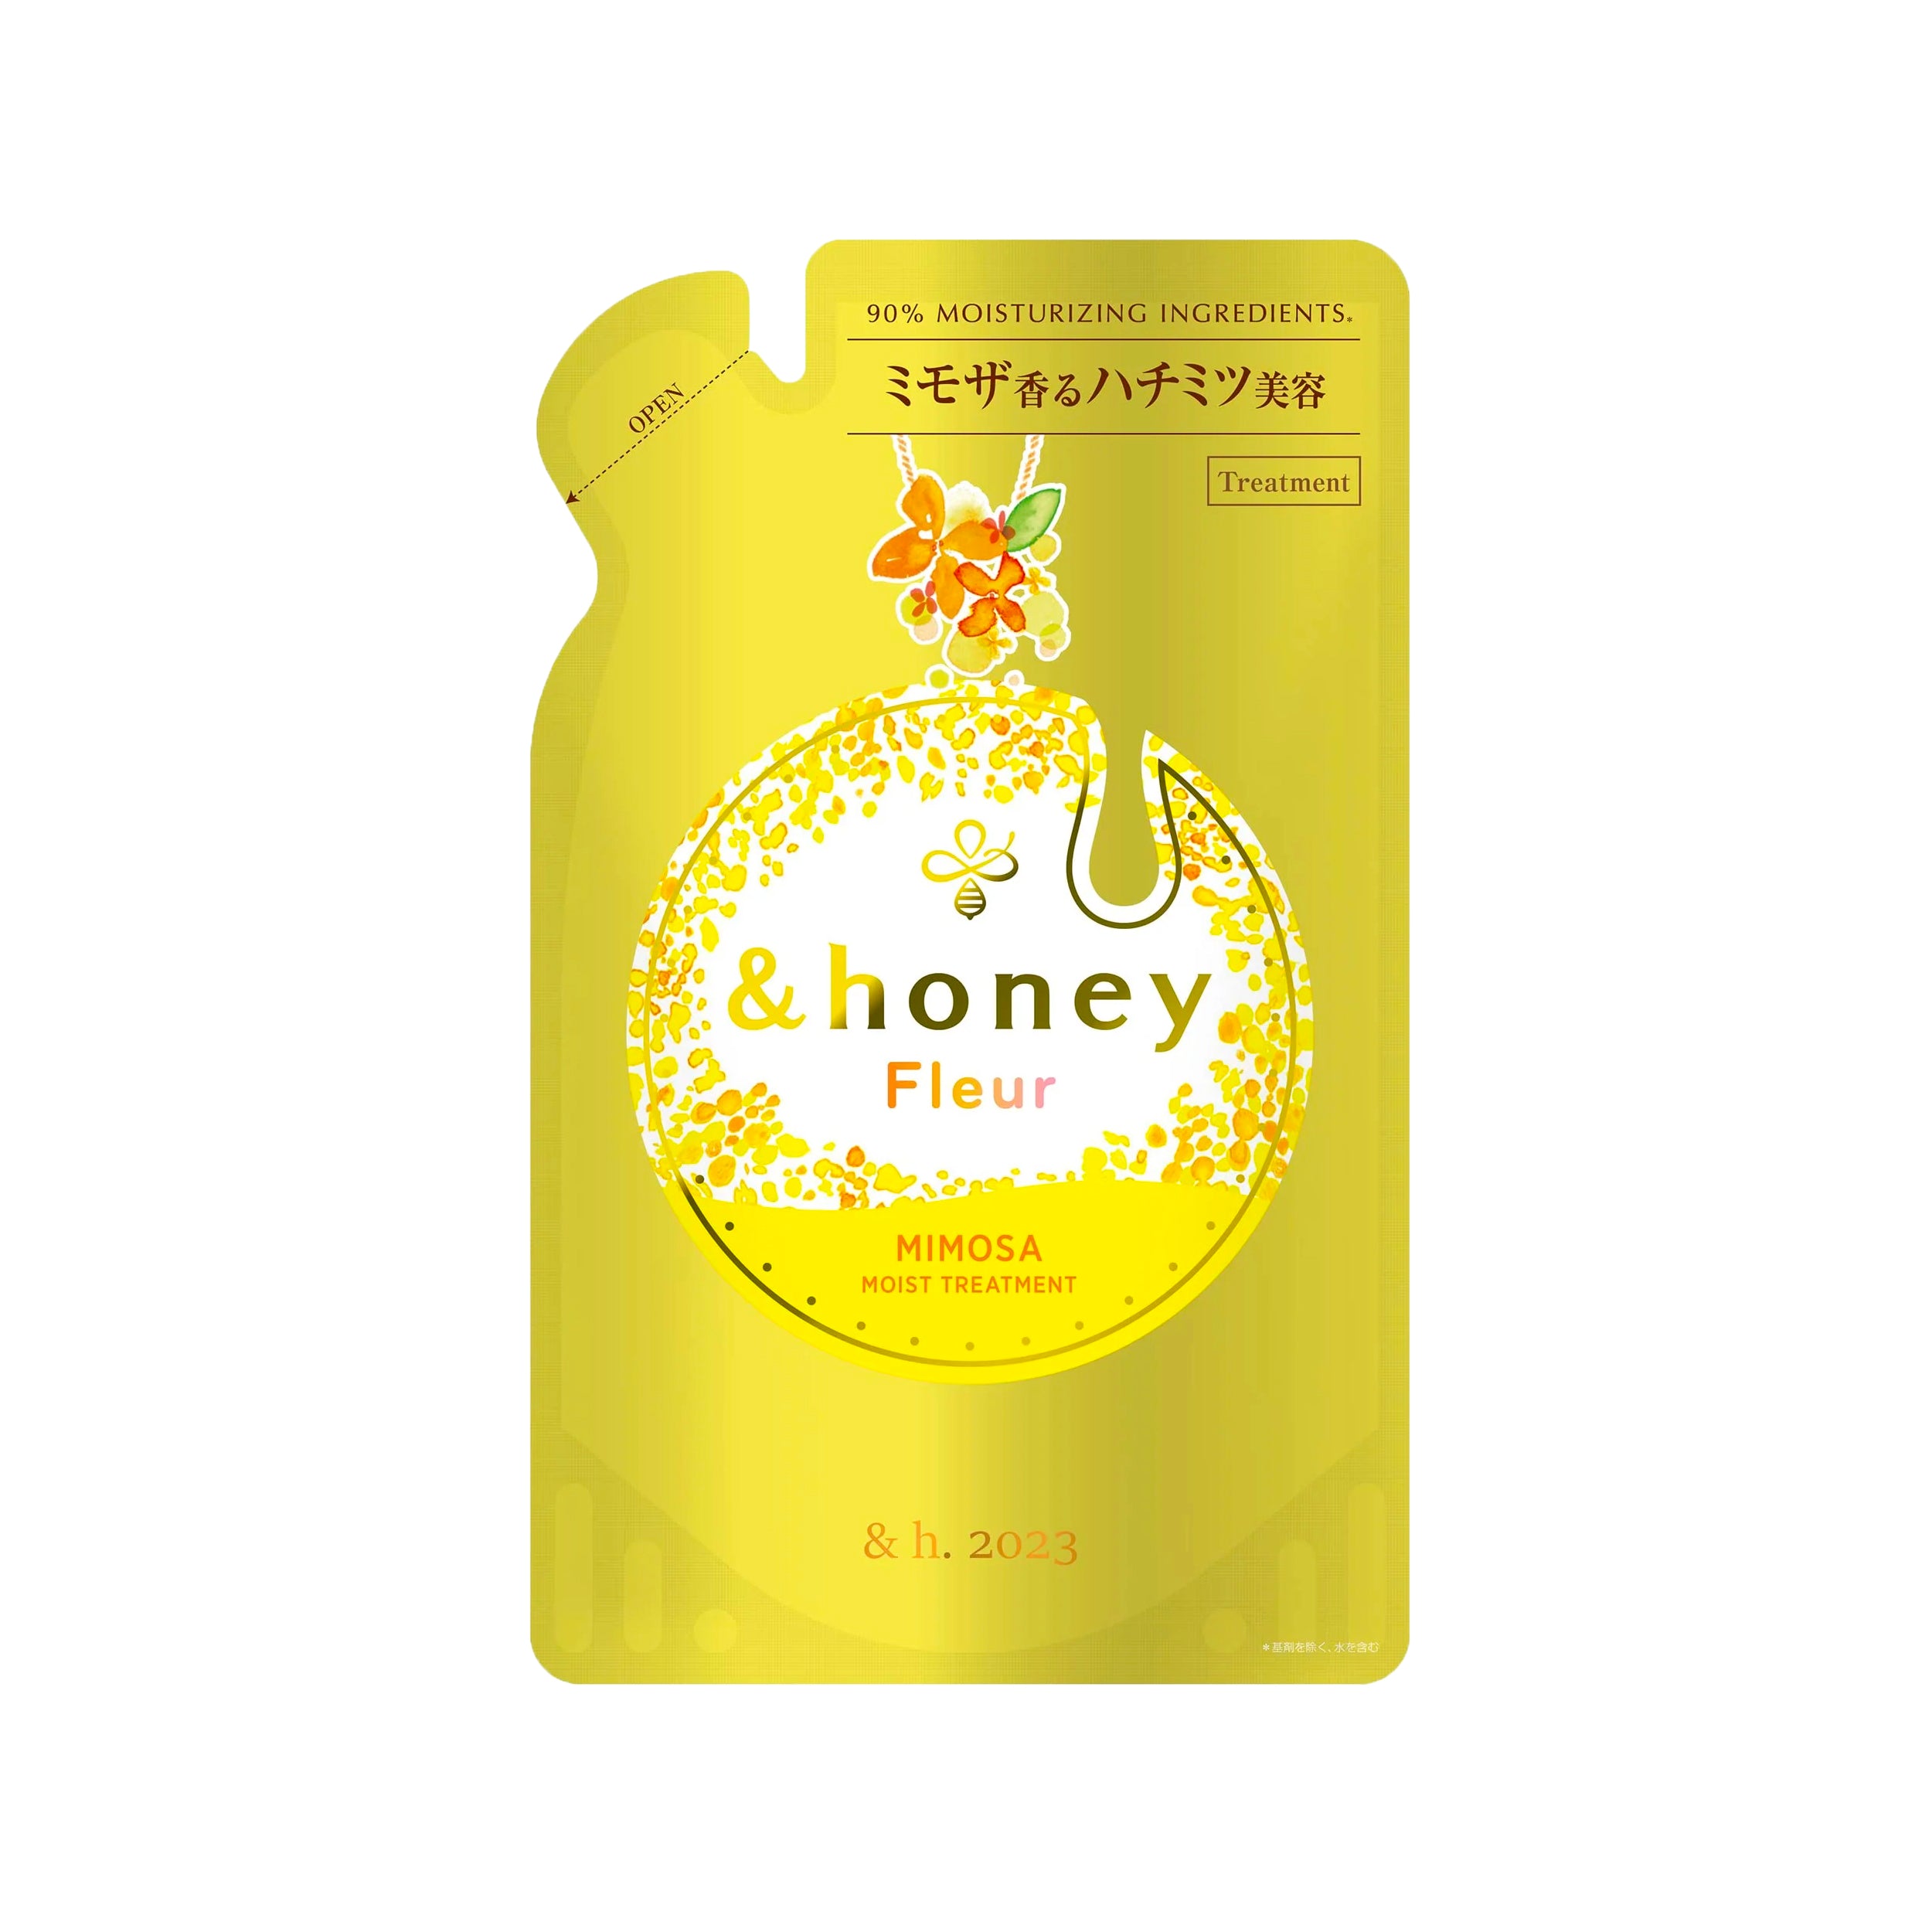 &honey Fleur Mimosa Moist Treatment